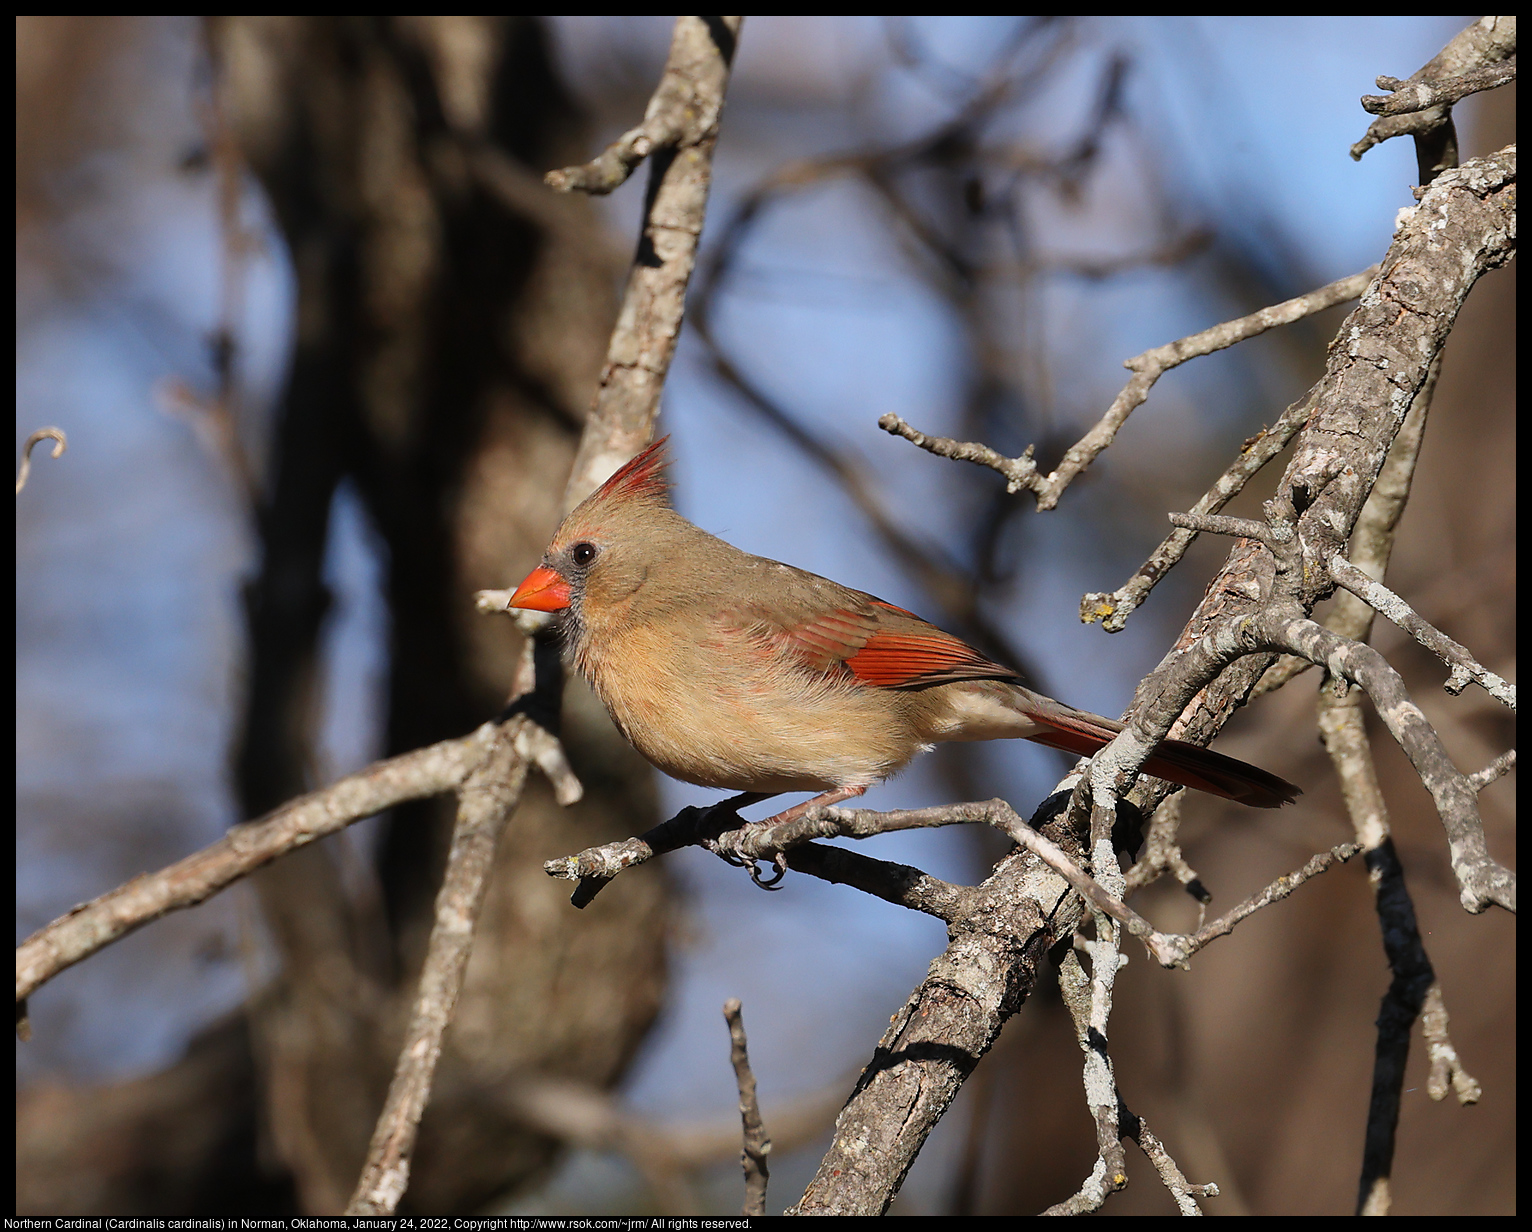 Northern Cardinal (Cardinalis cardinalis) in Norman, Oklahoma, January 24, 2022